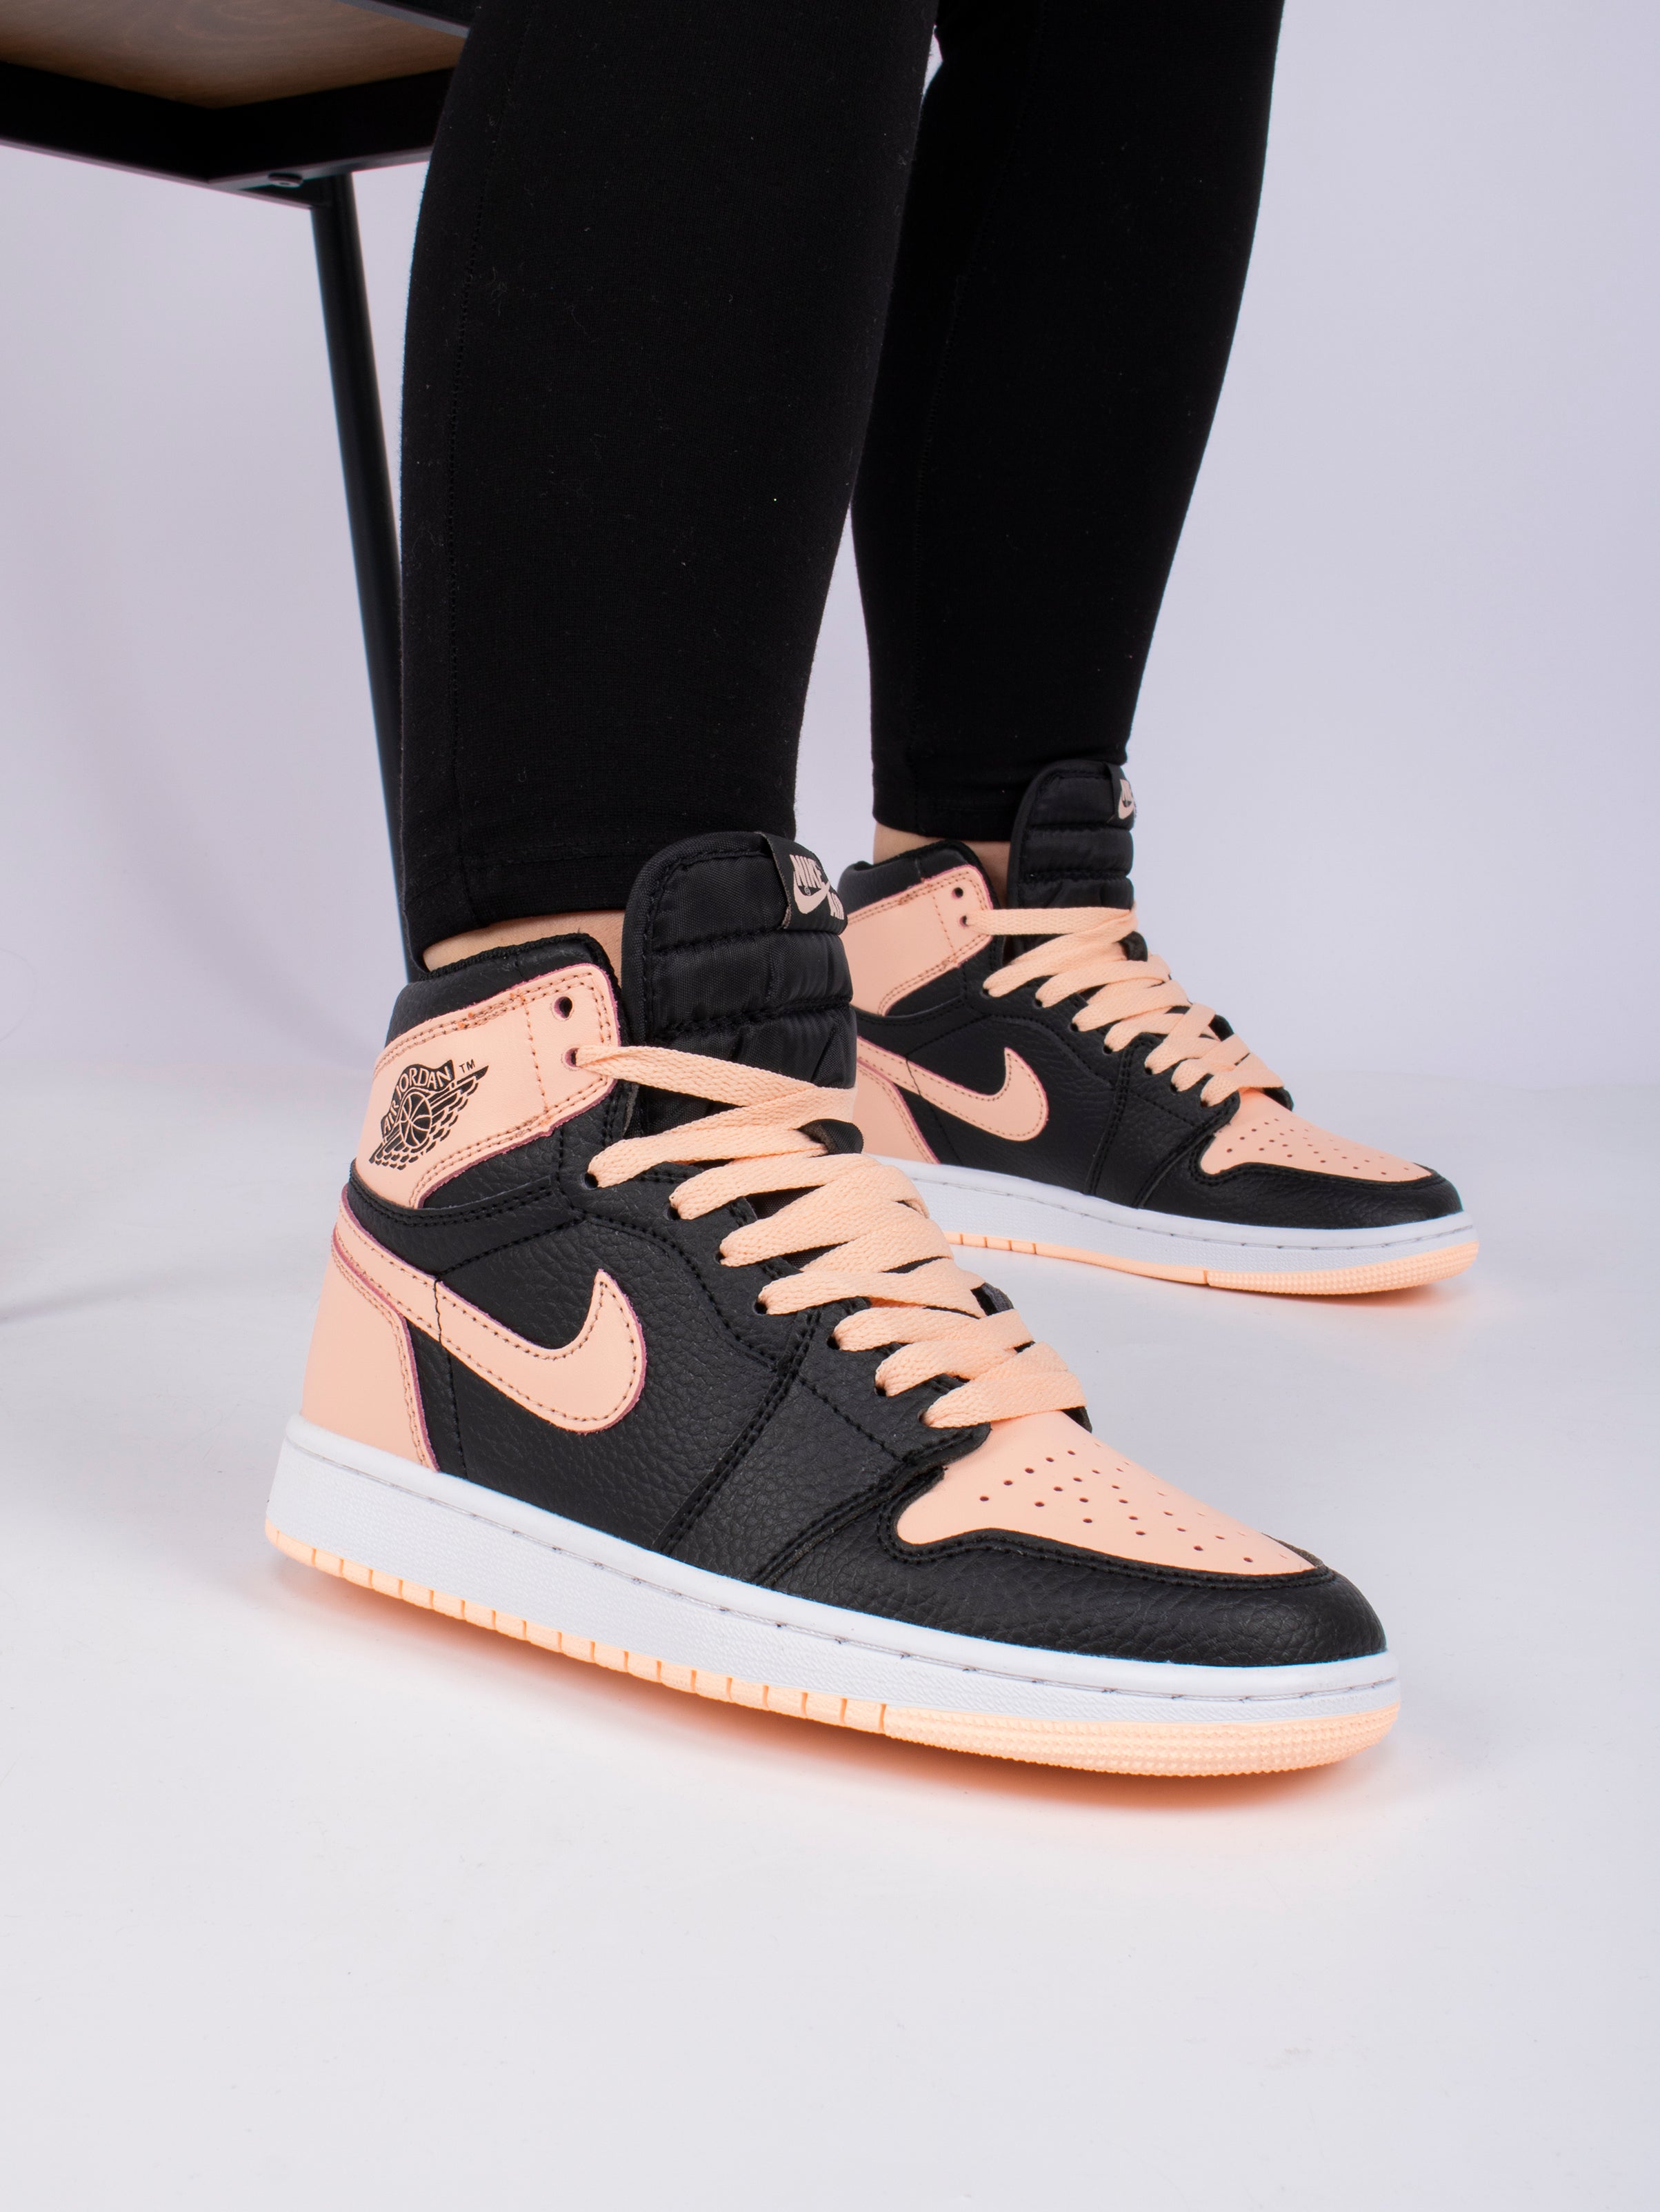 Nike Air Jordan Peach